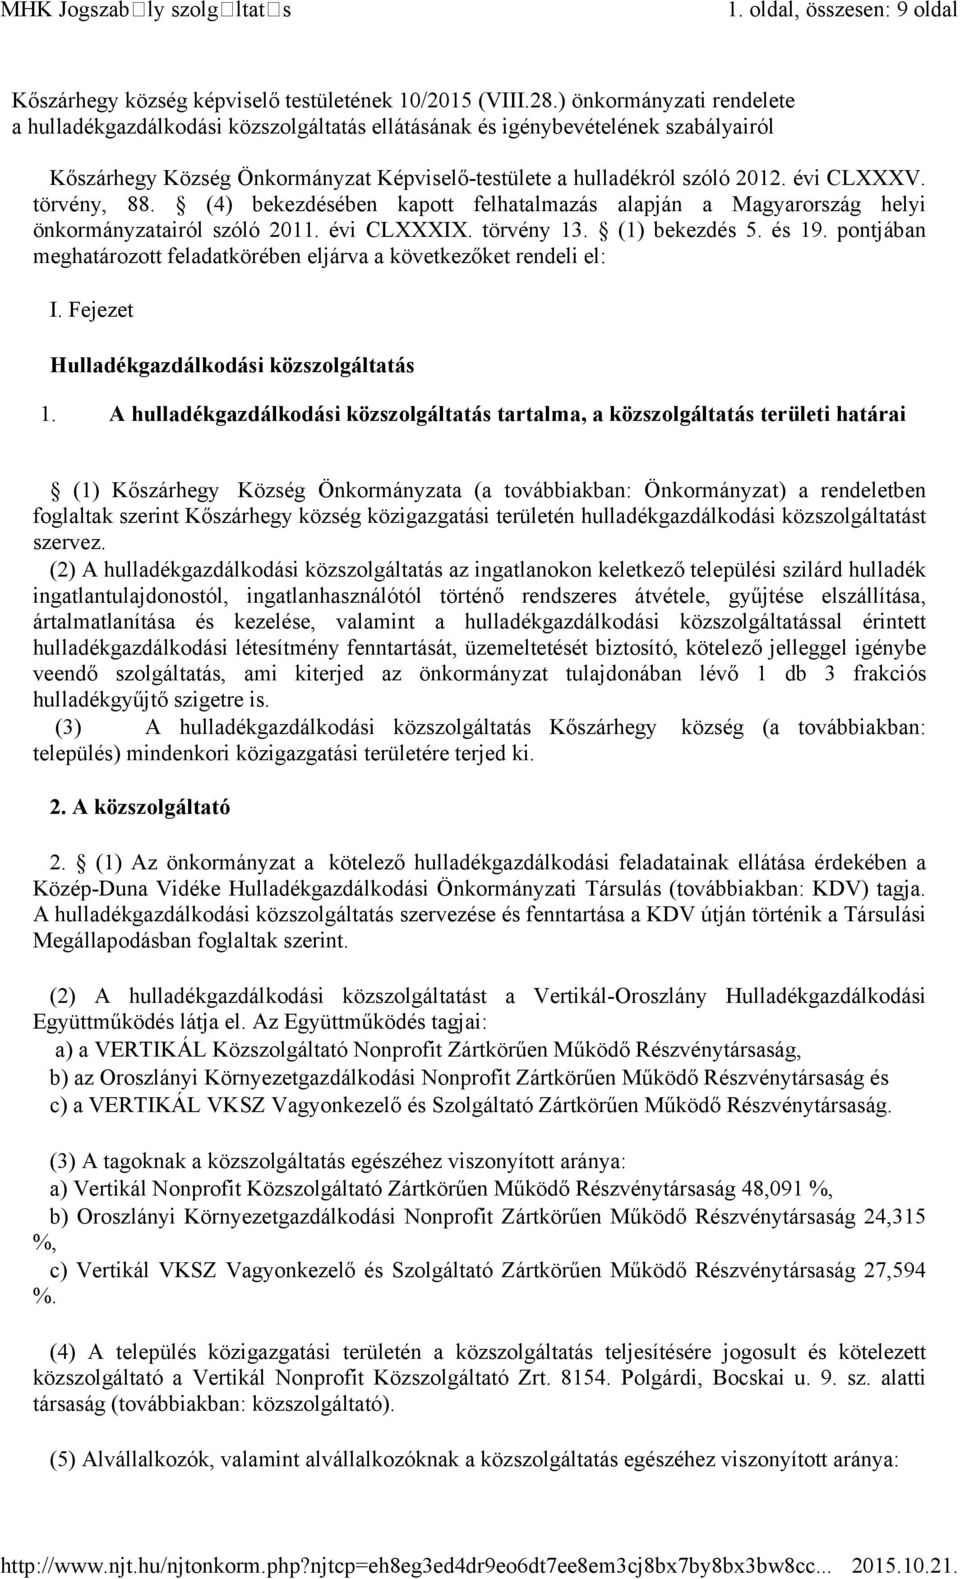 törvény, 88. (4) bekezdésében kapott felhatalmazás alapján a Magyarország helyi önkormányzatairól szóló 2011. évi CLXXXIX. törvény 13. (1) bekezdés 5. és 19.